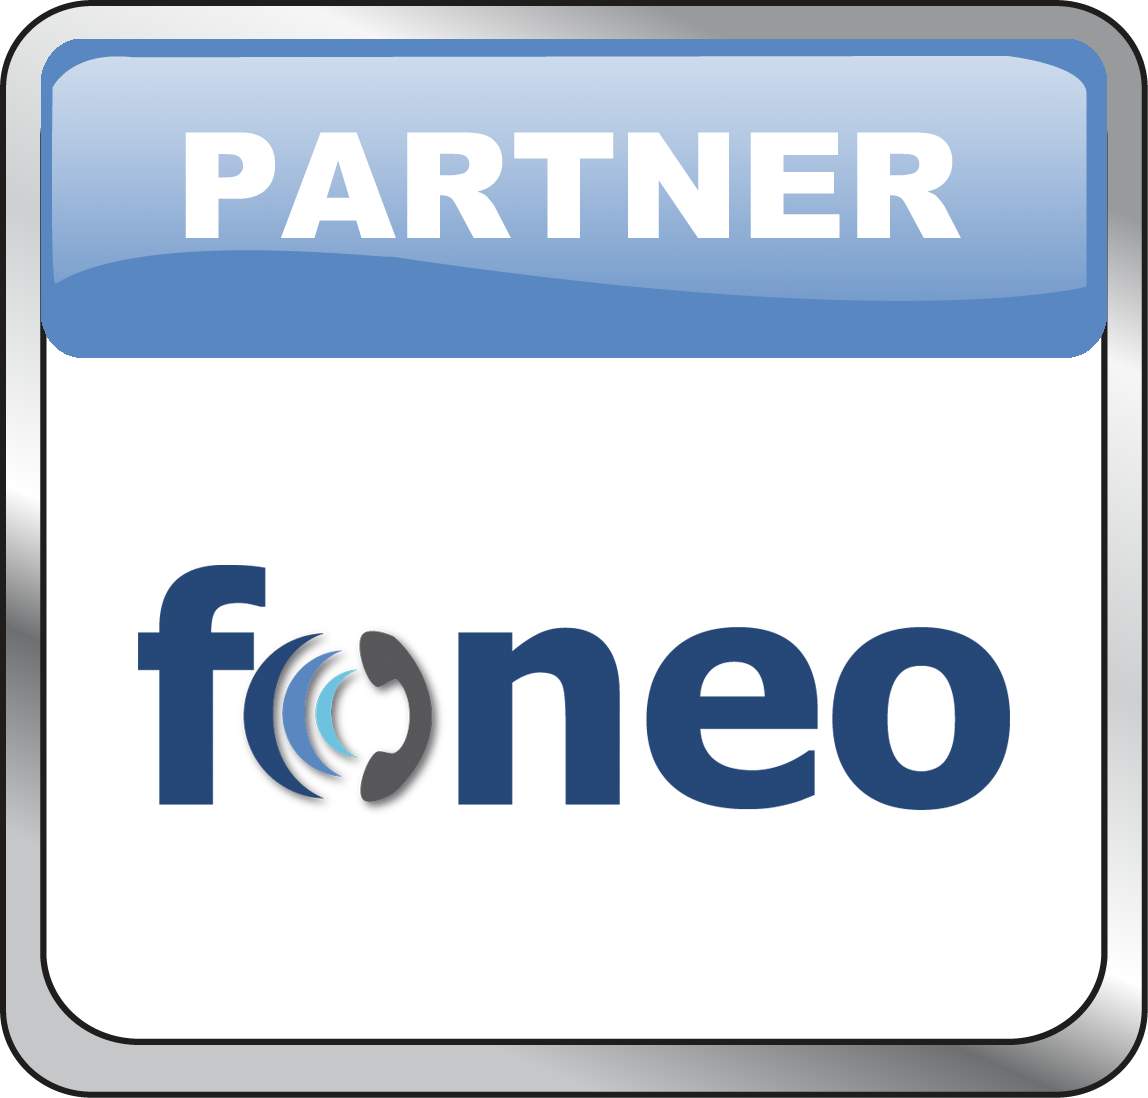 Partner Foneo